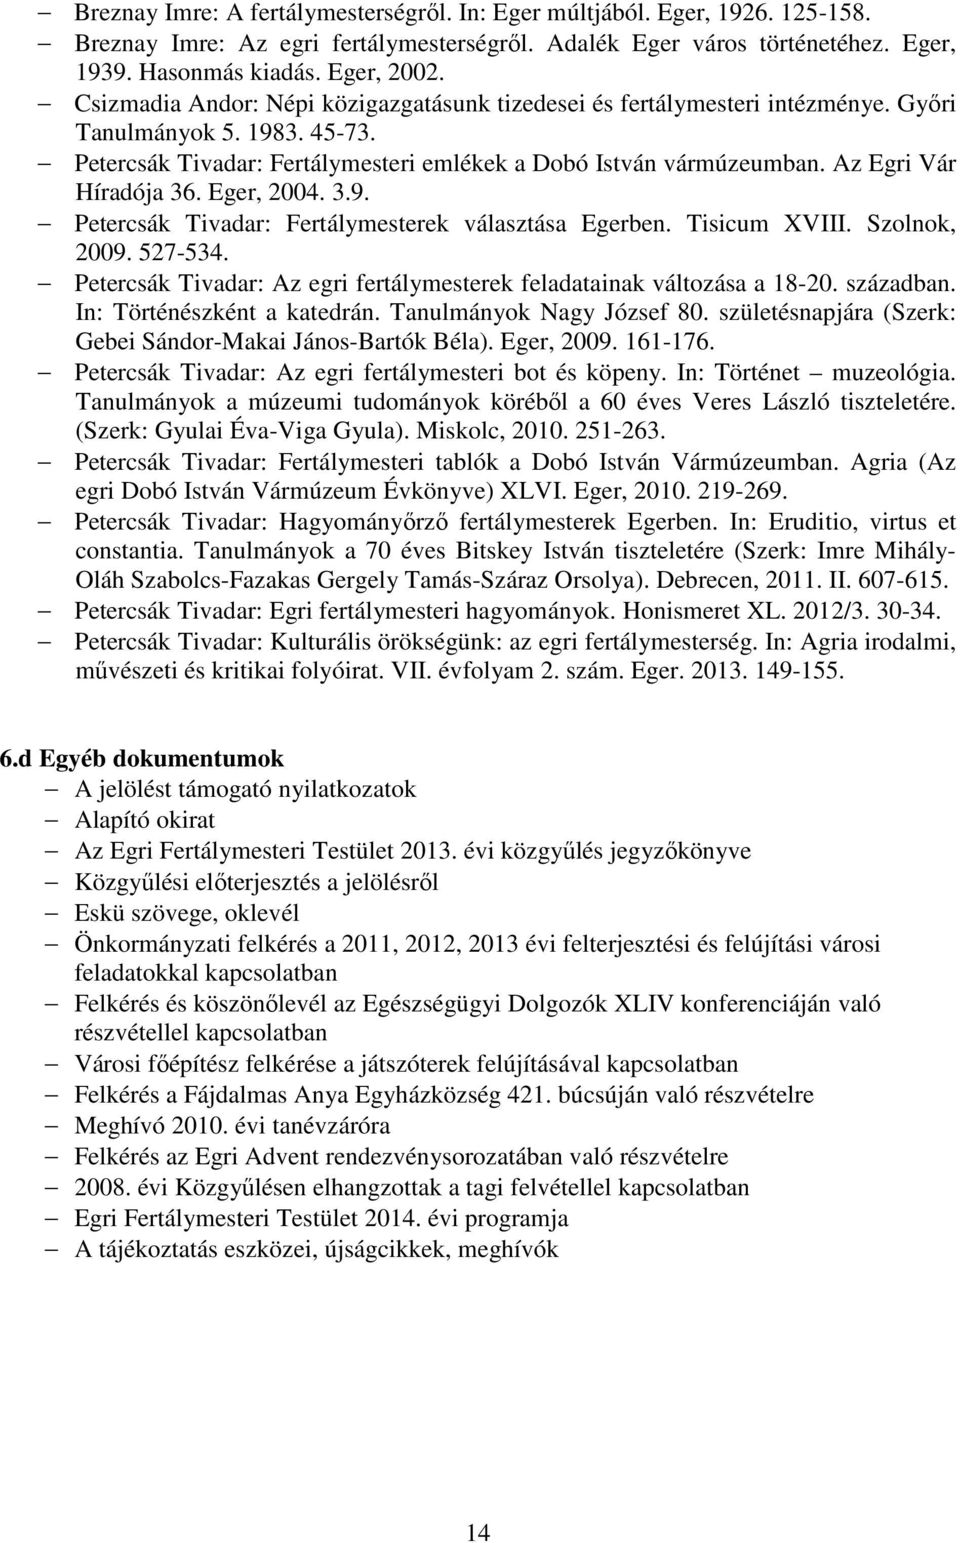 Az Egri Vár Híradója 36. Eger, 2004. 3.9. Petercsák Tivadar: Fertálymesterek választása Egerben. Tisicum XVIII. Szolnok, 2009. 527-534.